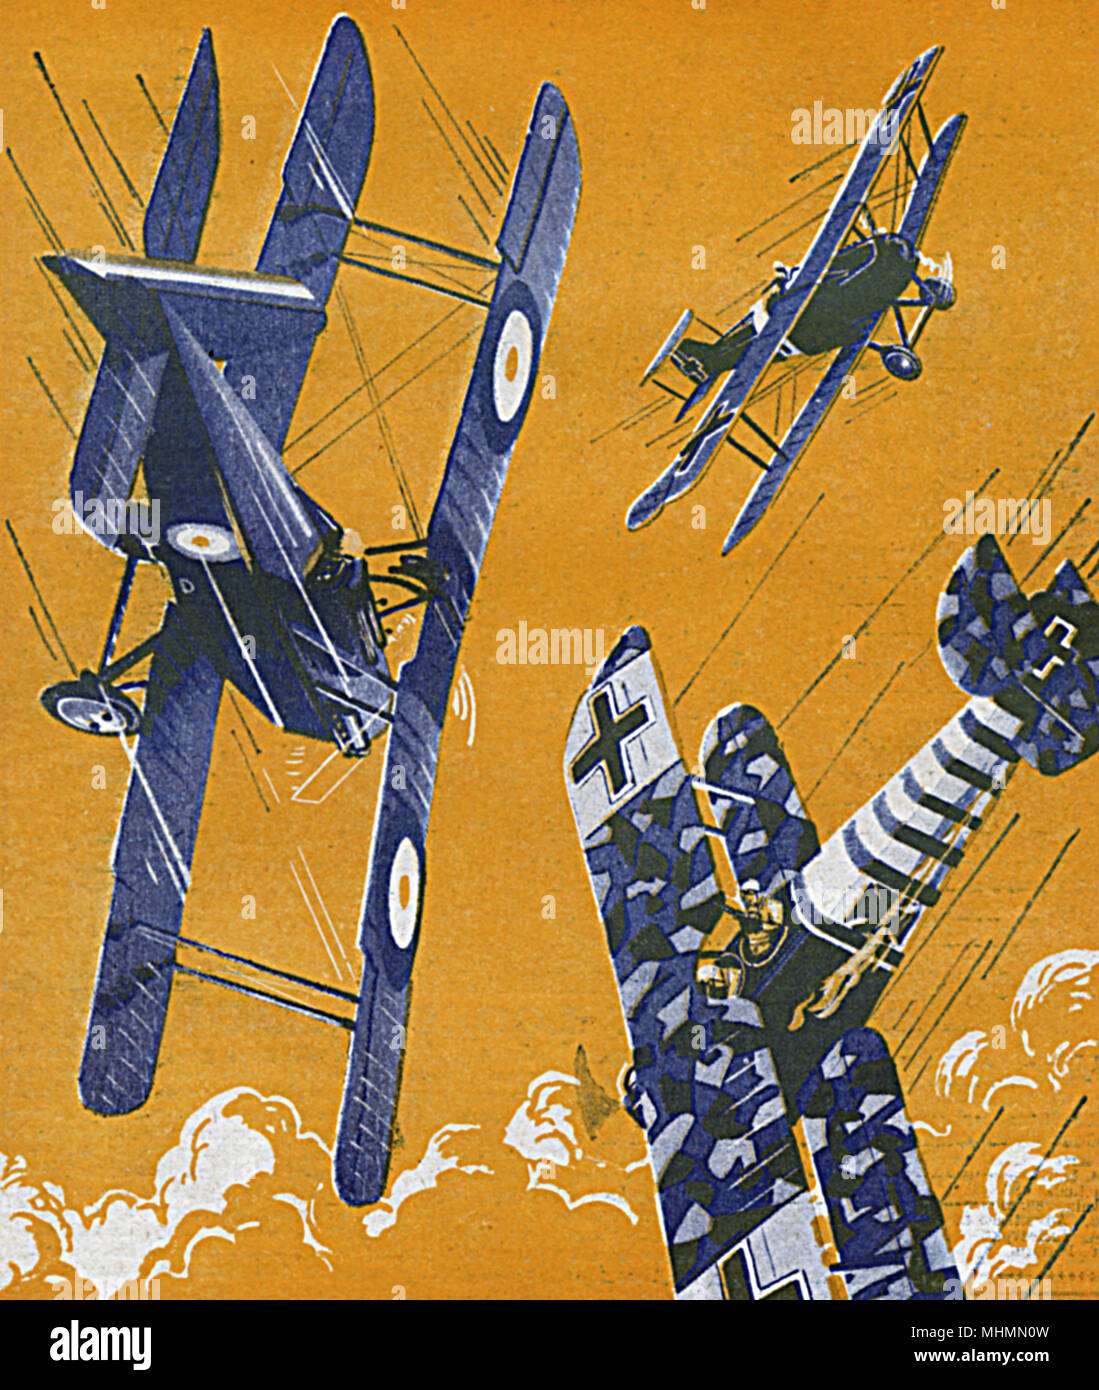 Cavalieri dell'aria - combattimento aereo della prima guerra mondiale - Albert Ball Foto Stock